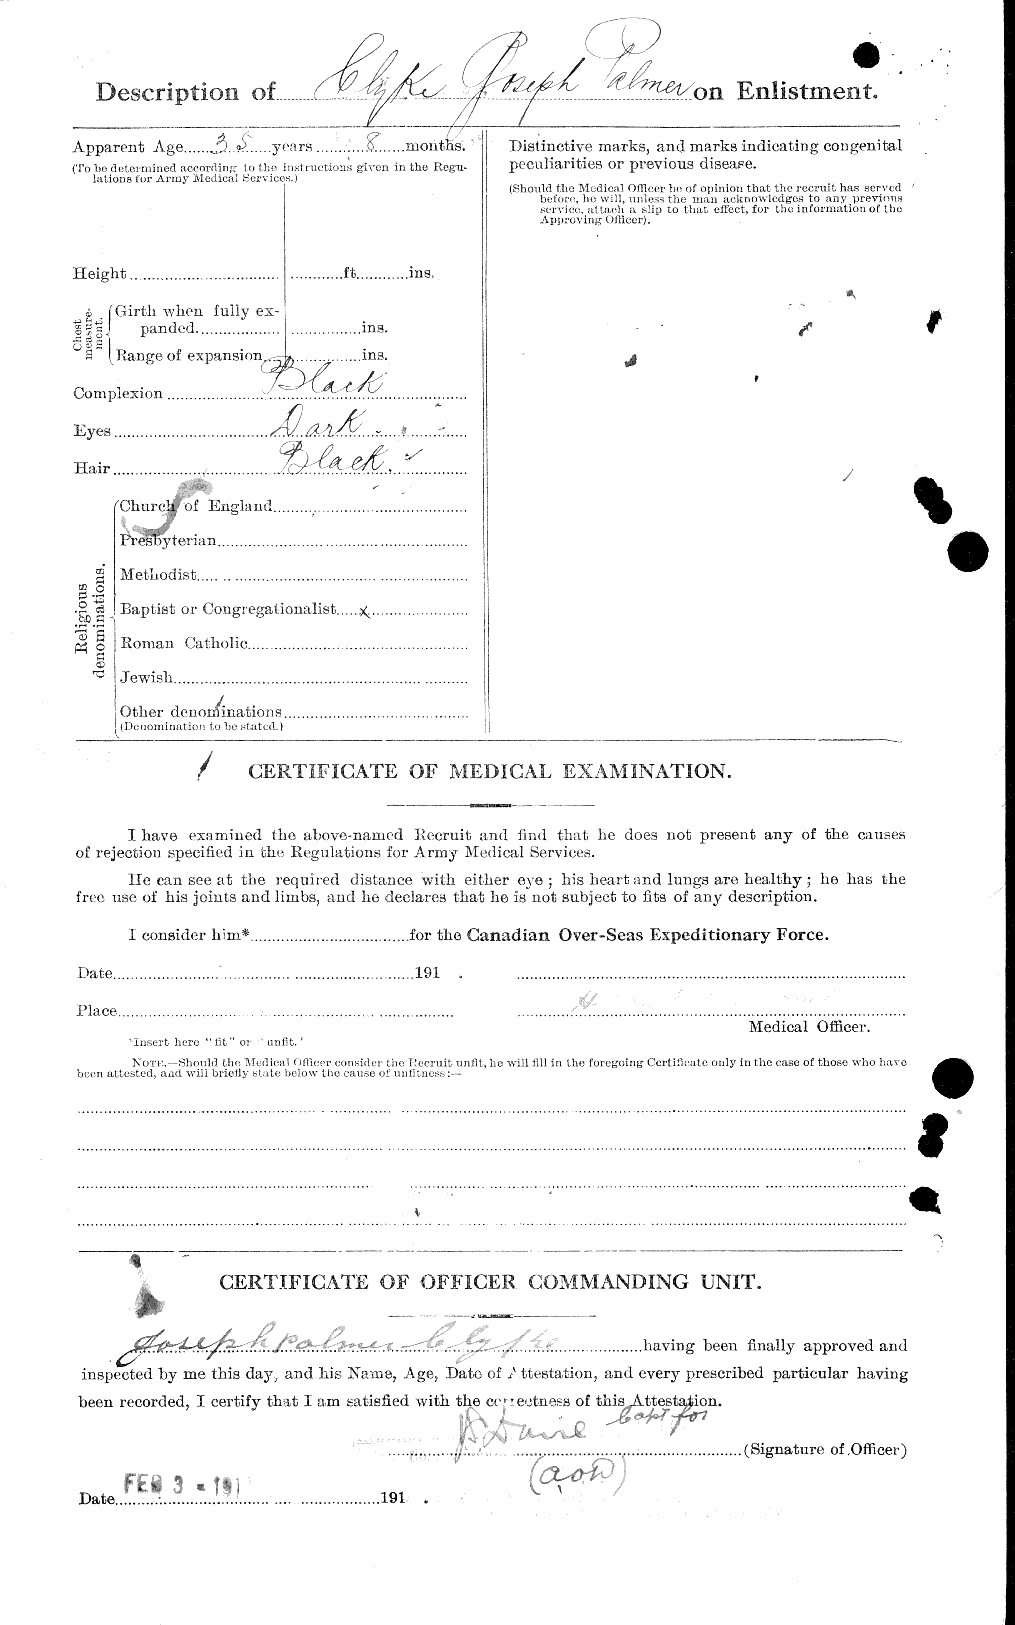 Dossiers du Personnel de la Première Guerre mondiale - CEC 026324b